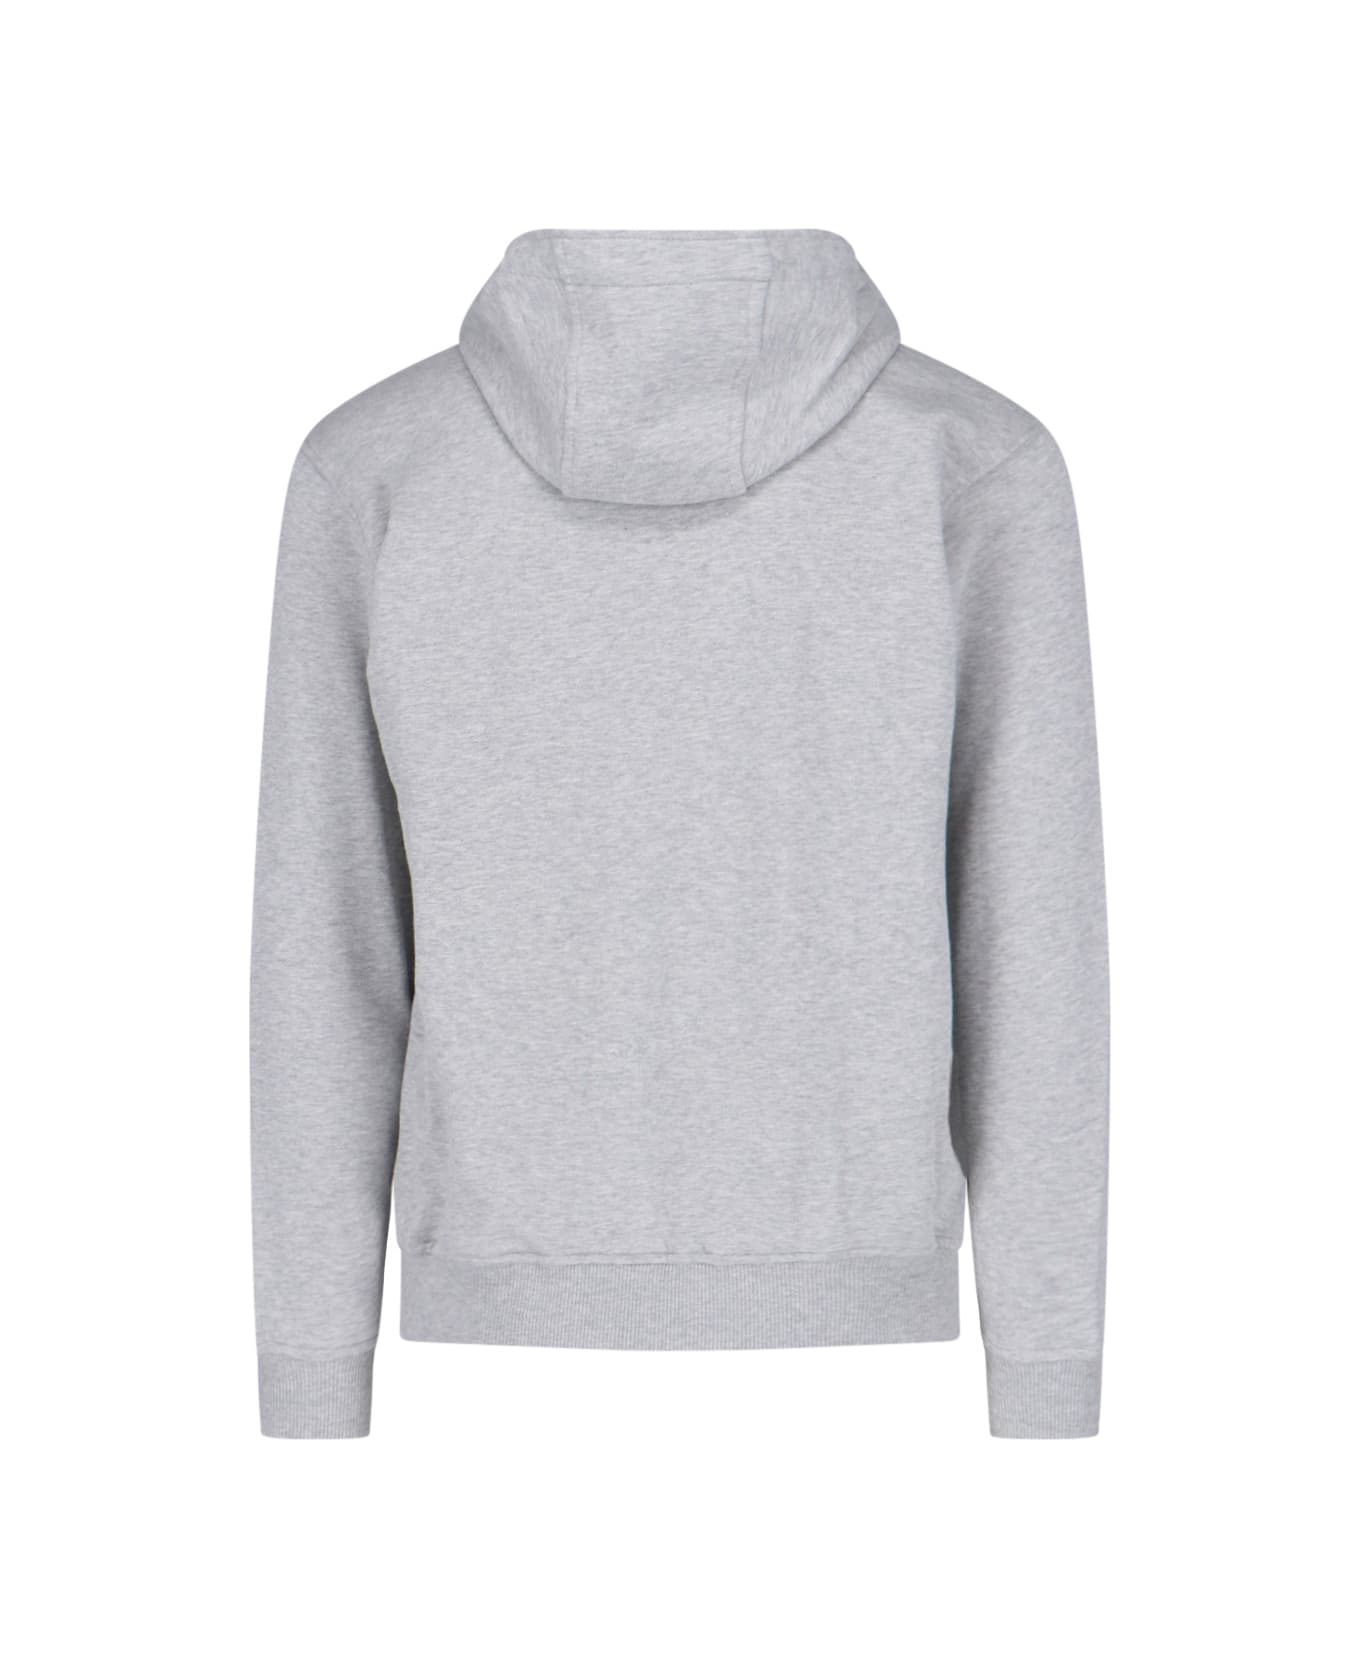 Comme des Garçons Printed Zip Sweatshirt - Gray